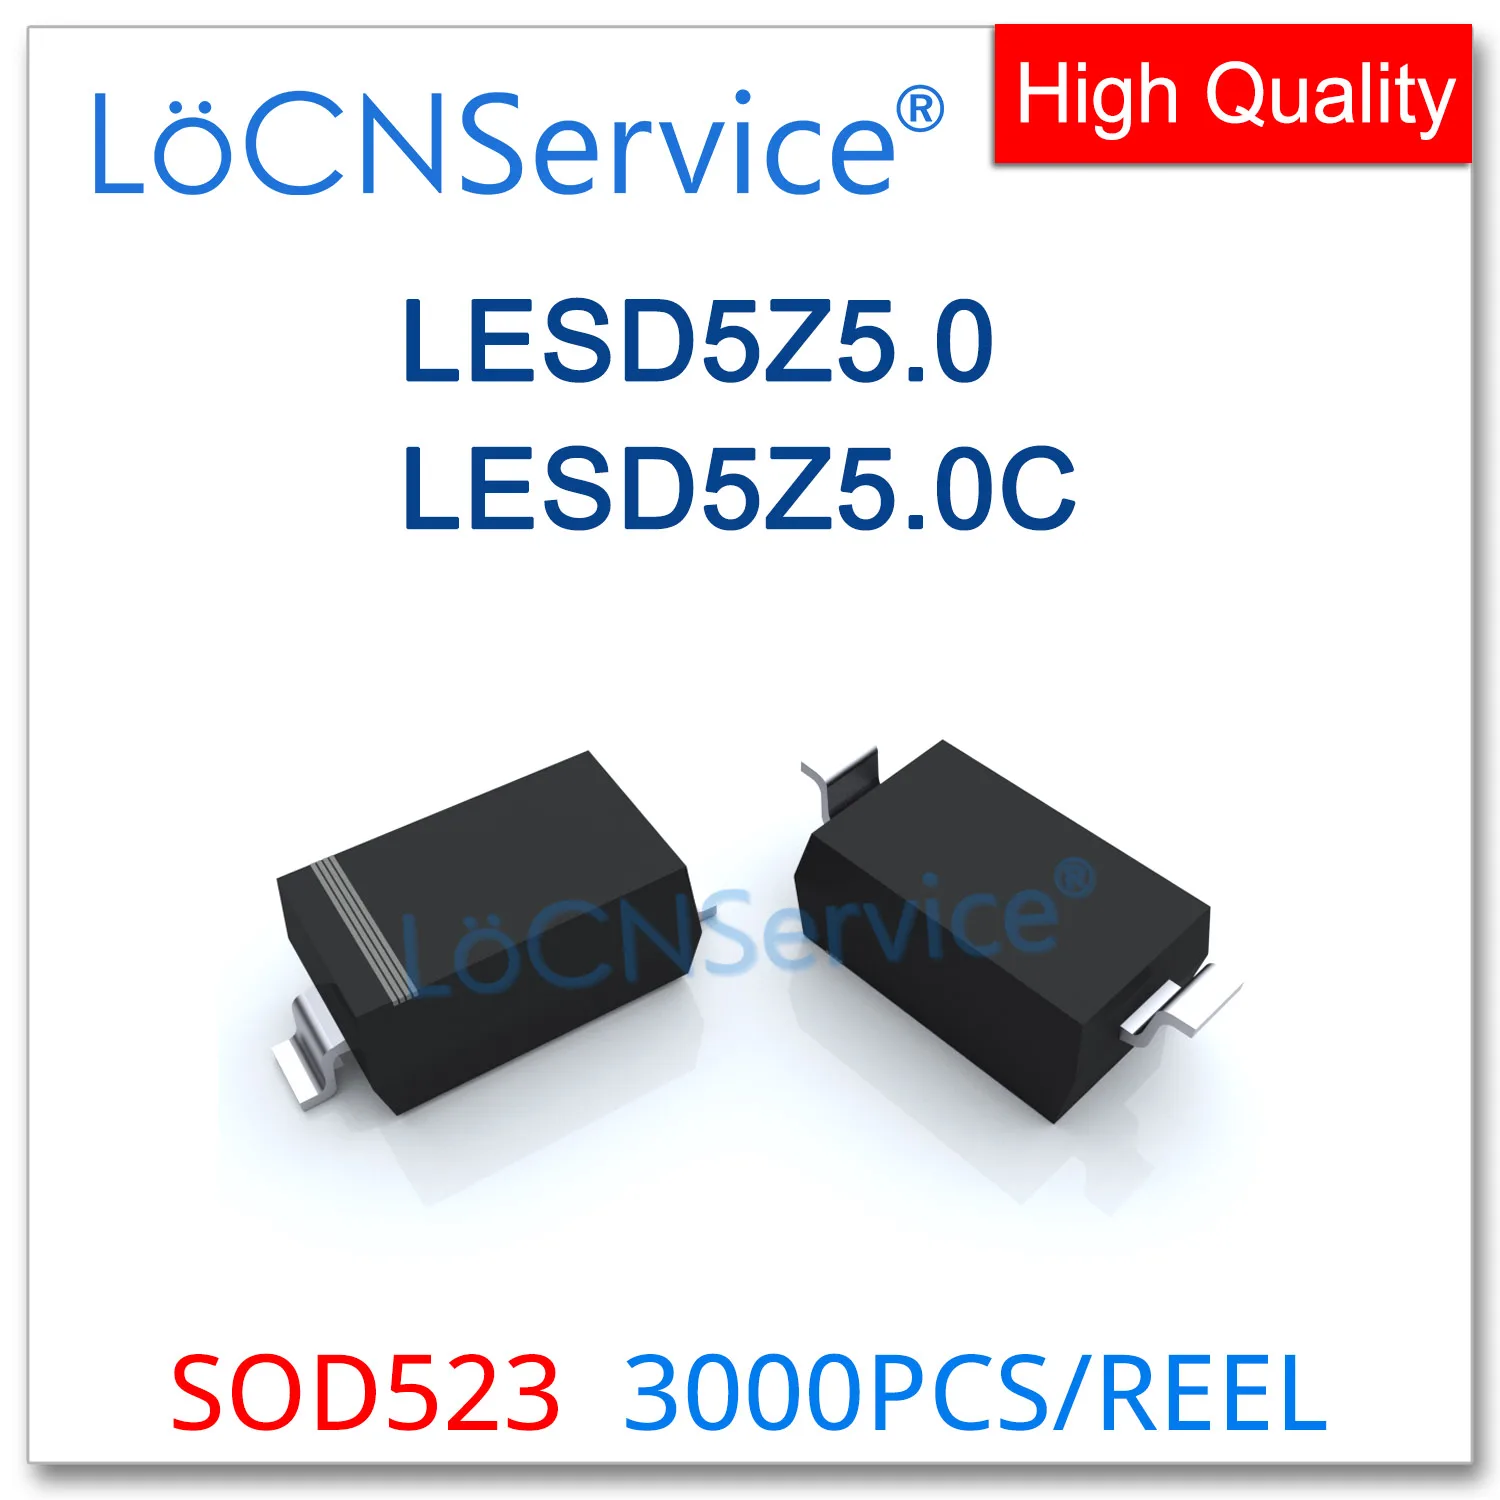 LoCNService SOD523 3000 ADET LESD5Z5.0T1G LESD5Z5.0CT1G LESD5Z5.0 LESD5Z5. 0C 5V Tek Çift Yönlü çin'de Yapılan ESD SC-79